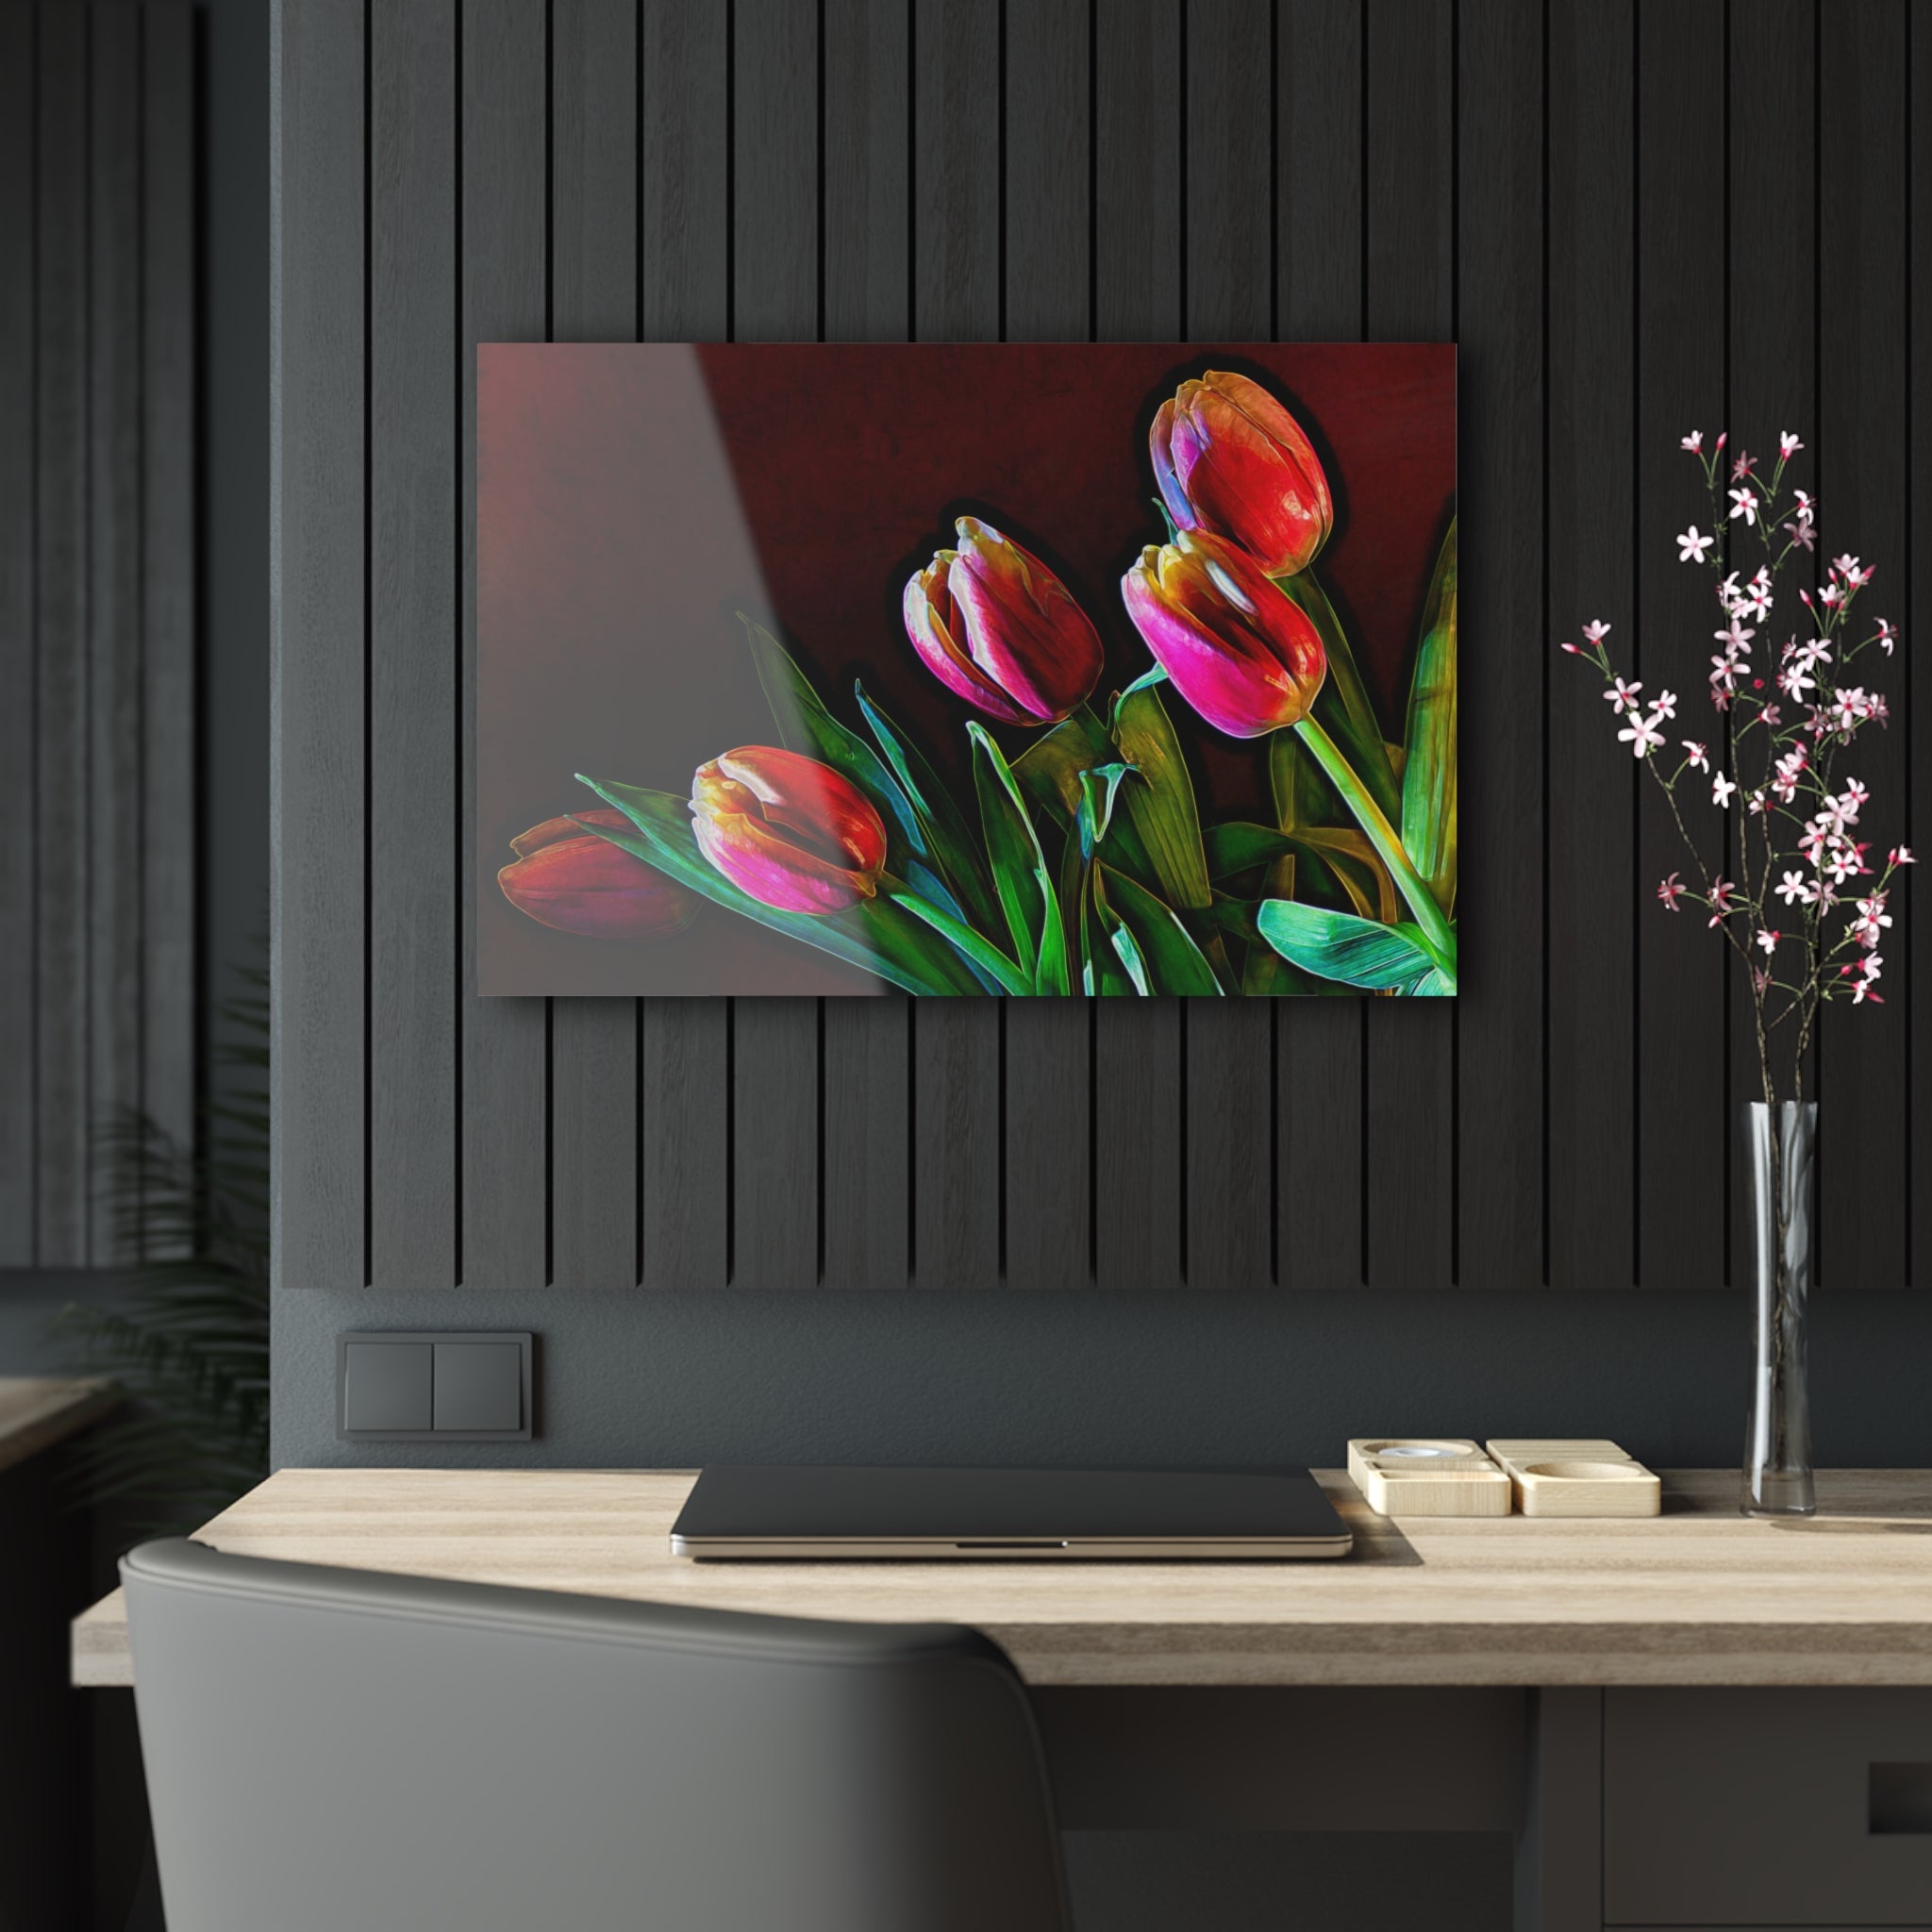 Impression à incandescence tracée par tulipe